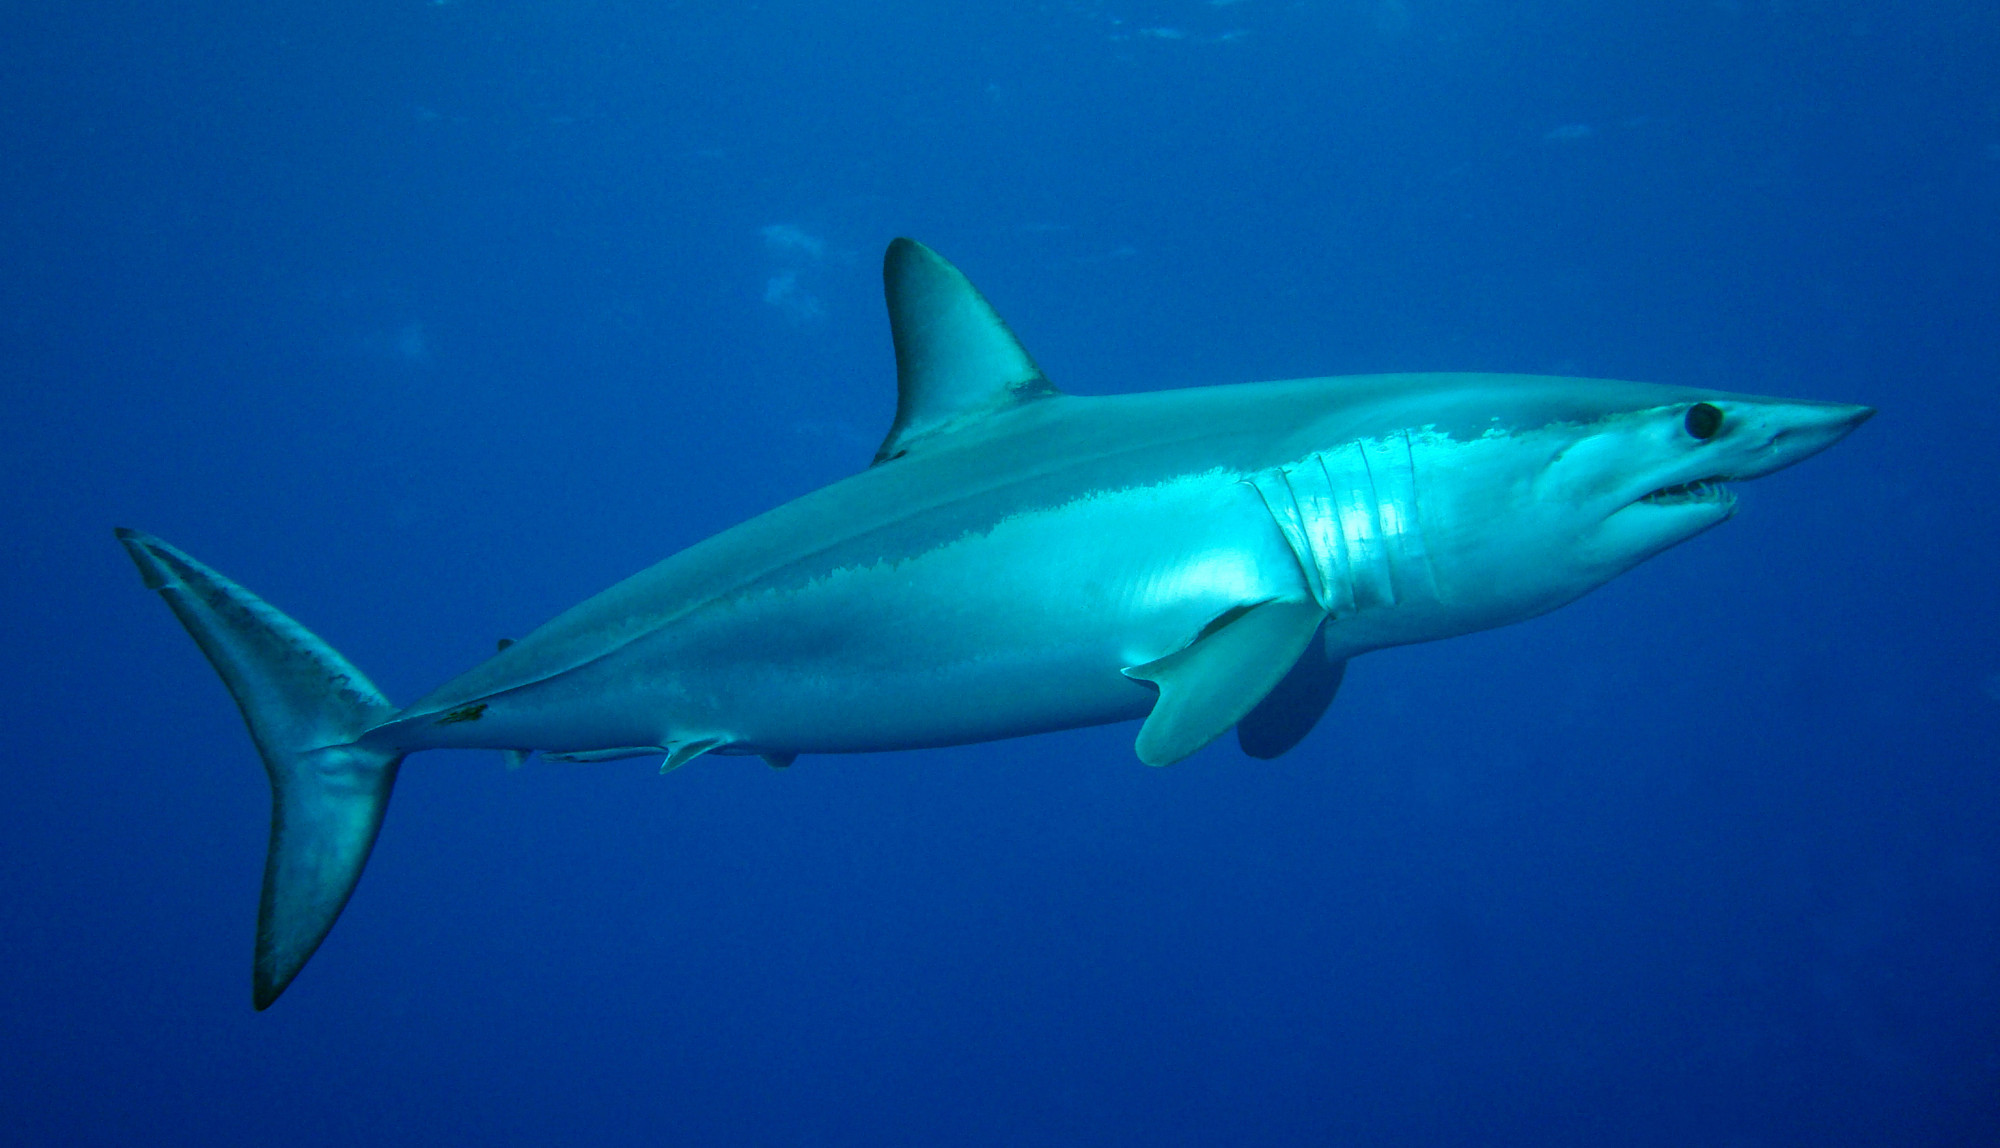 Tele van az Adria cápákkal, de aggodalomra csak néhány faj ad okot